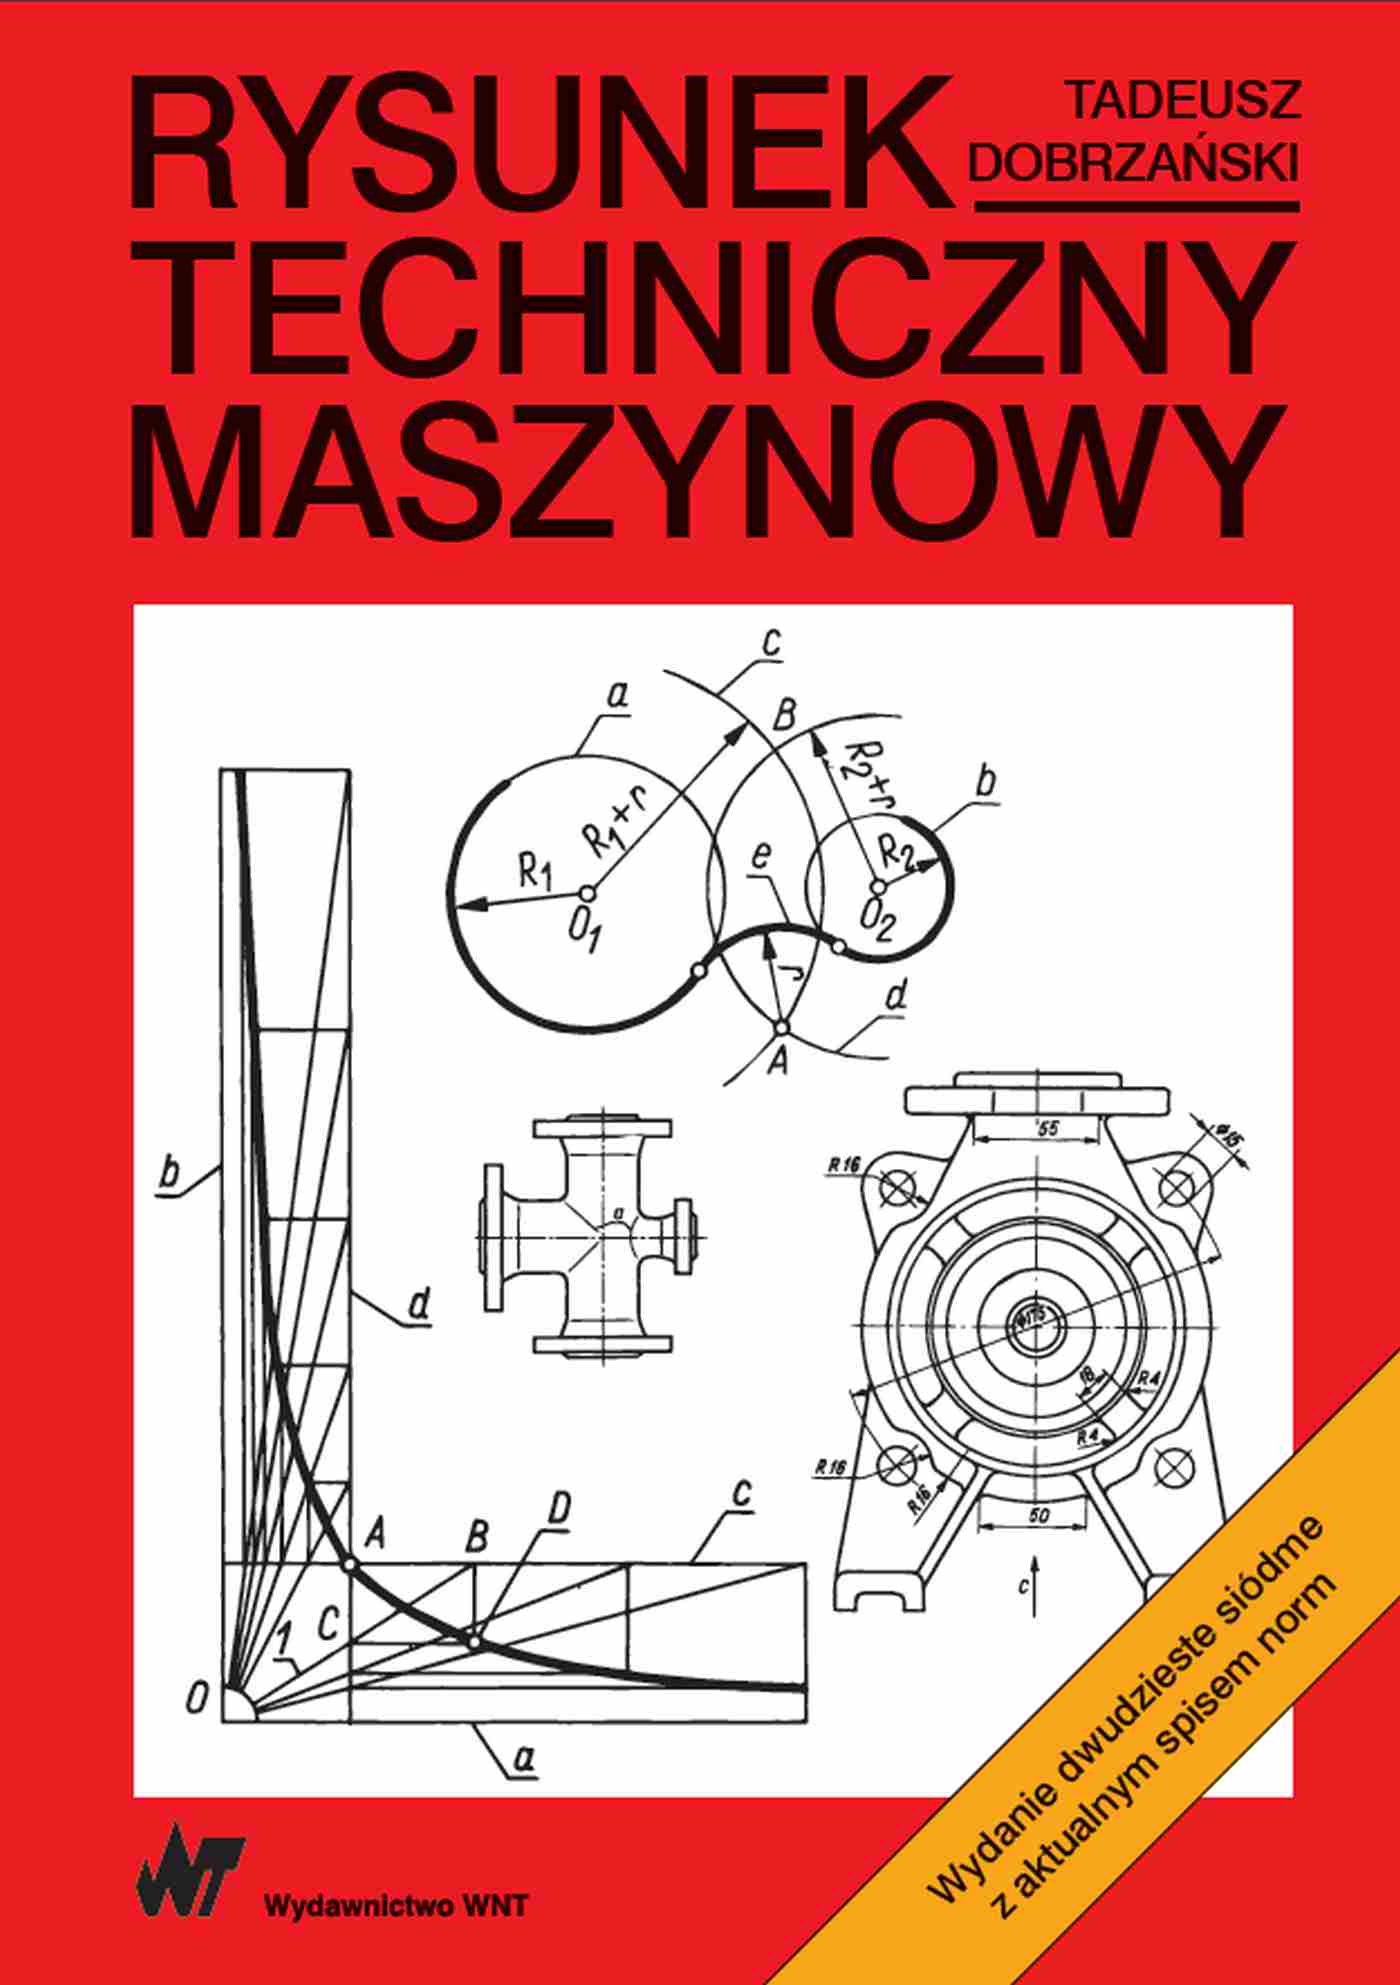 Kniha Rysunek techniczny maszynowy Tadeusz Dobrzański